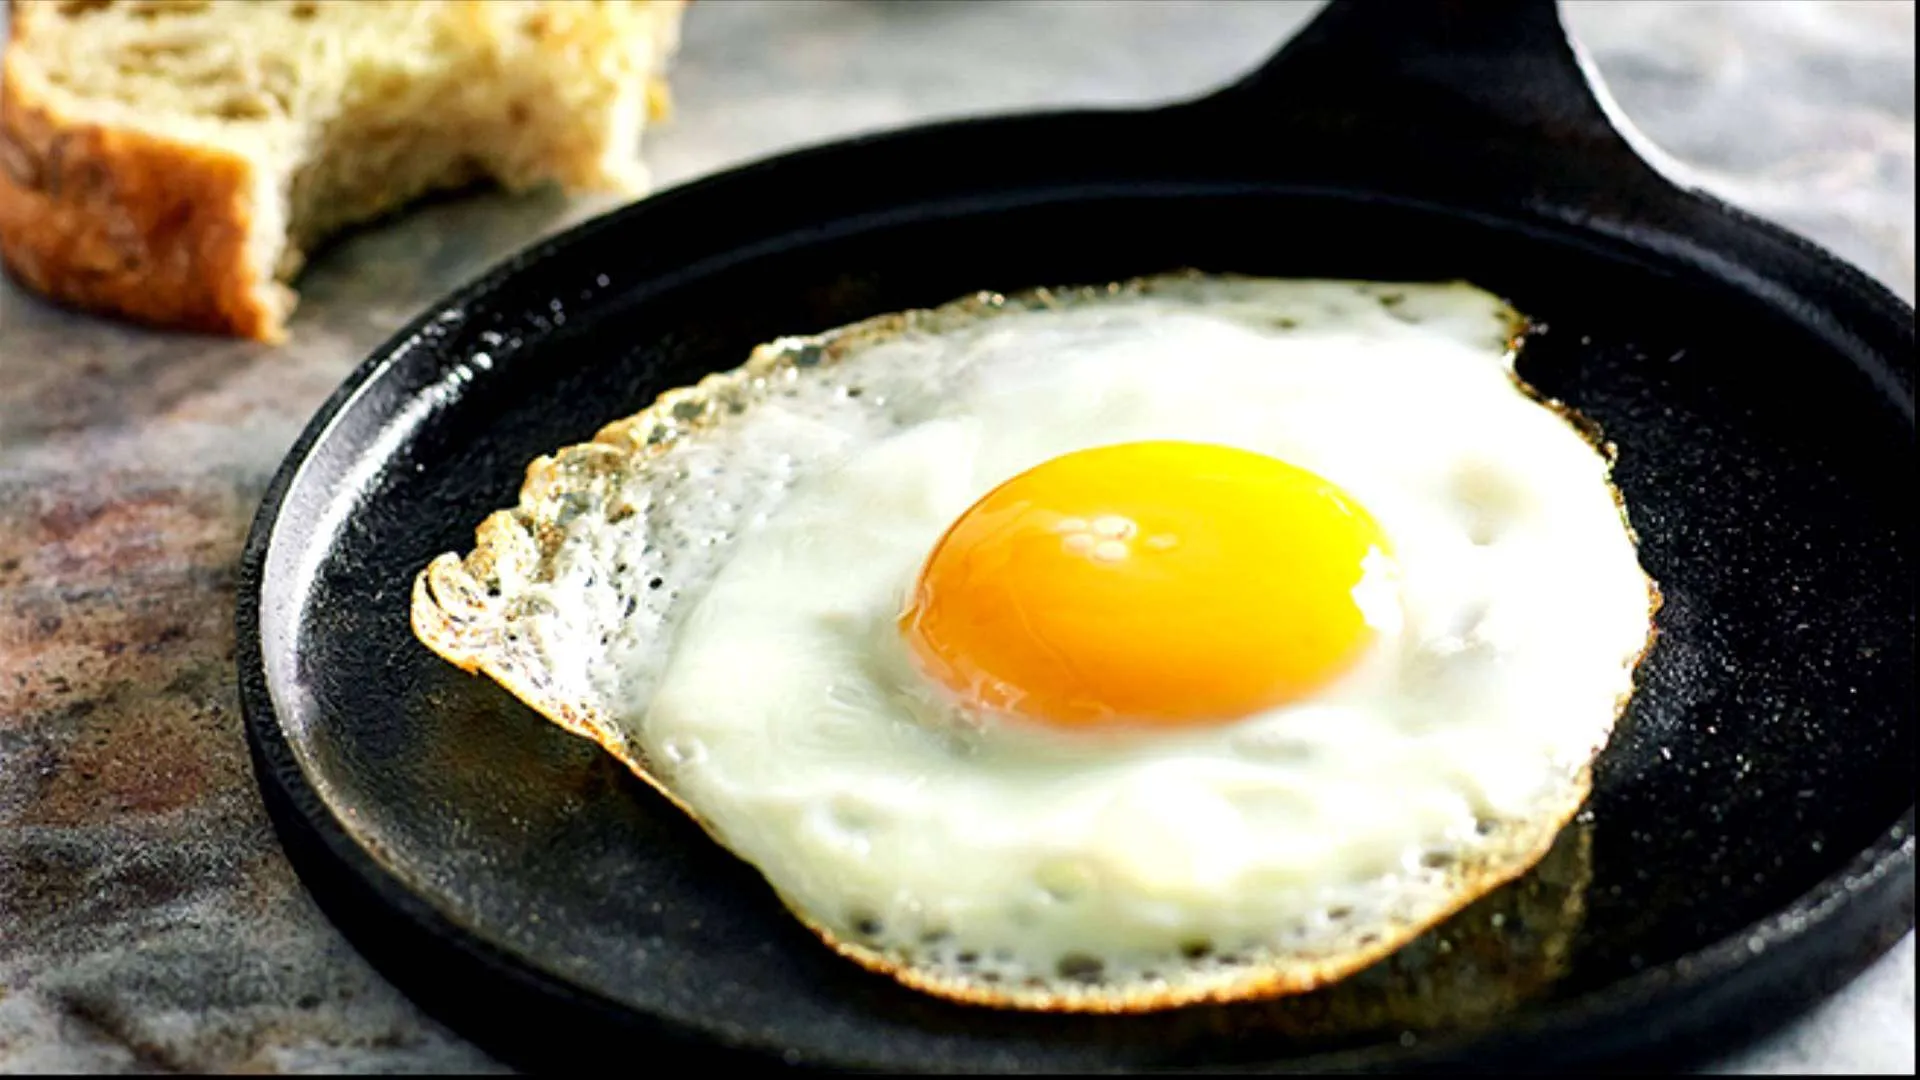 A perfeição em cada detalhe: ovo frito na inovadora panela RedSilver, onde a tecnologia encontra o sabor.